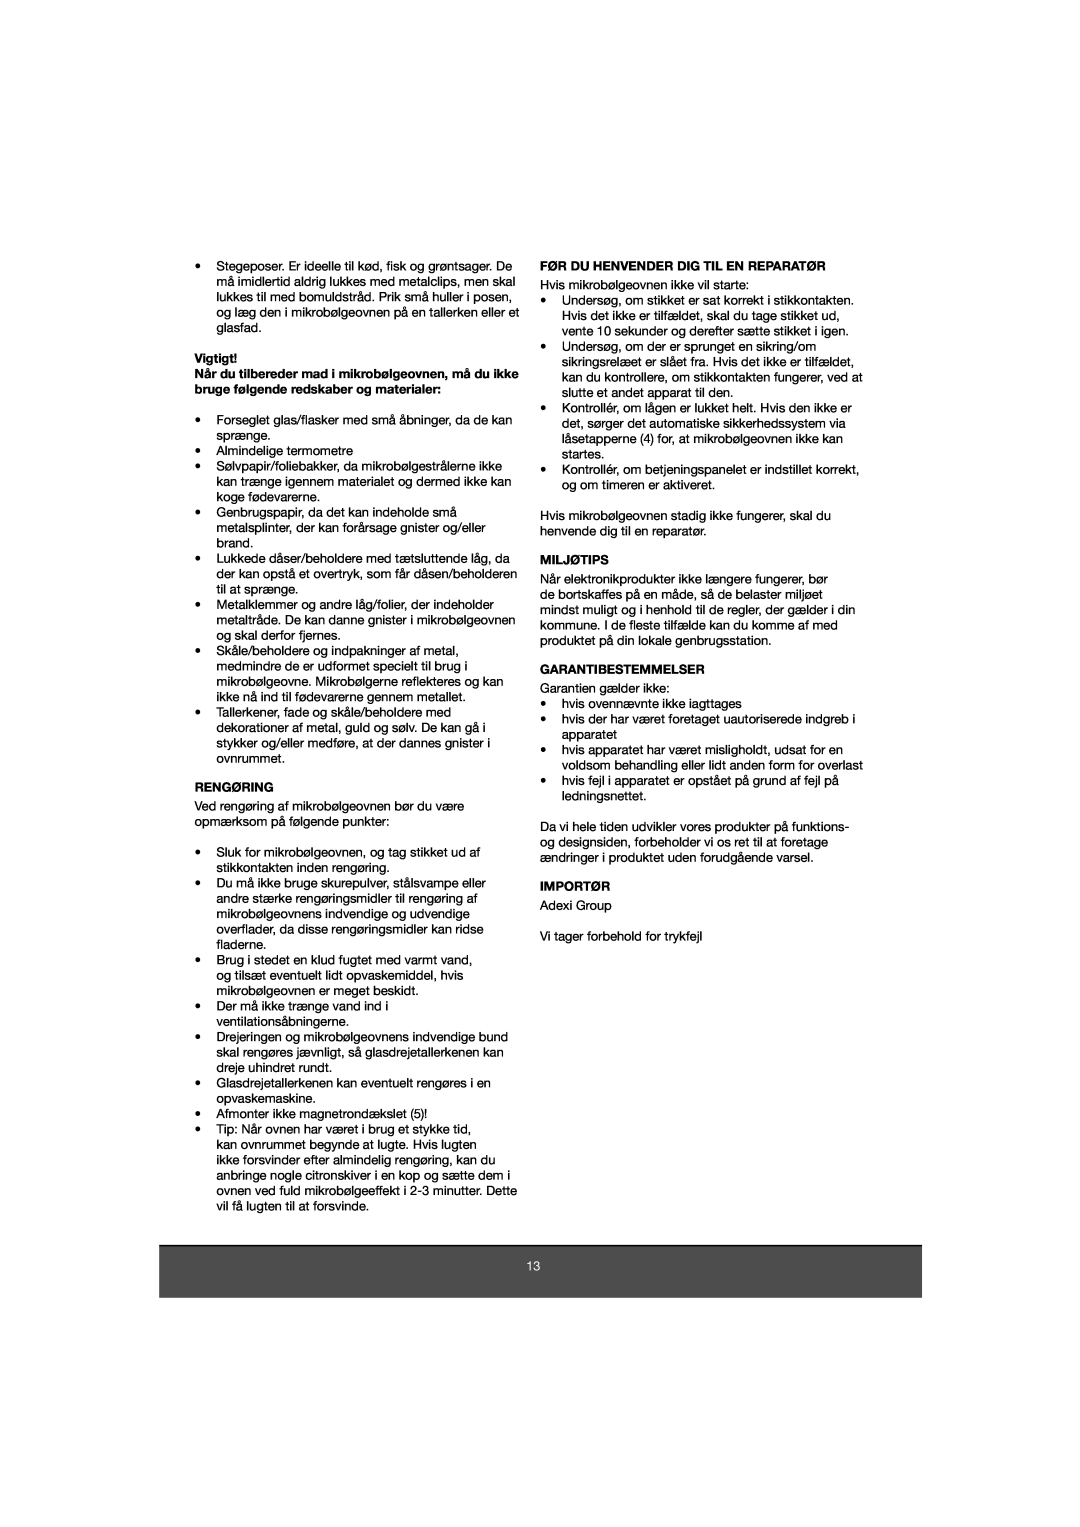 Melissa 653-081 manual Vigtigt, Rengøring, Før Du Henvender Dig Til En Reparatør, Miljøtips, Garantibestemmelser, Importør 